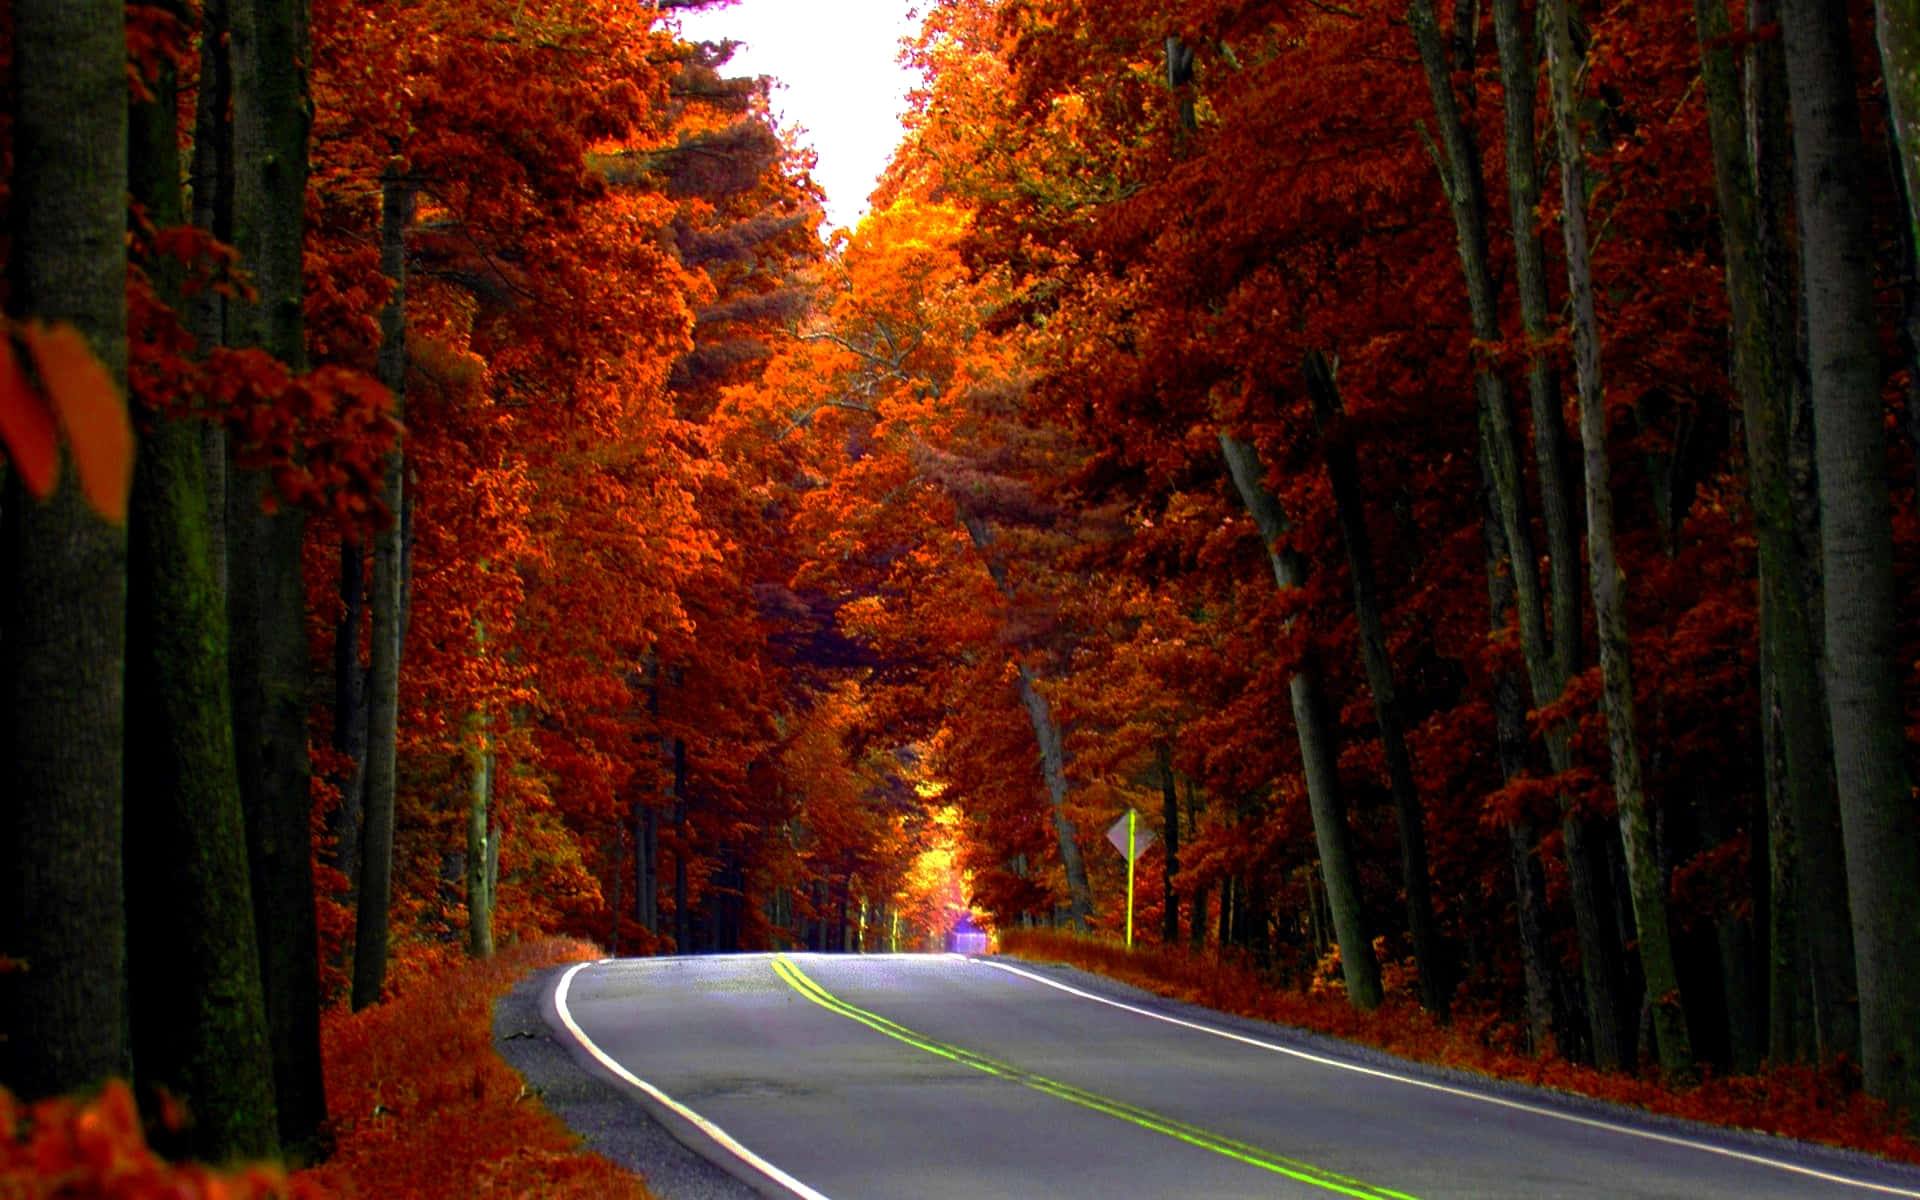 Highway In Autumn Season